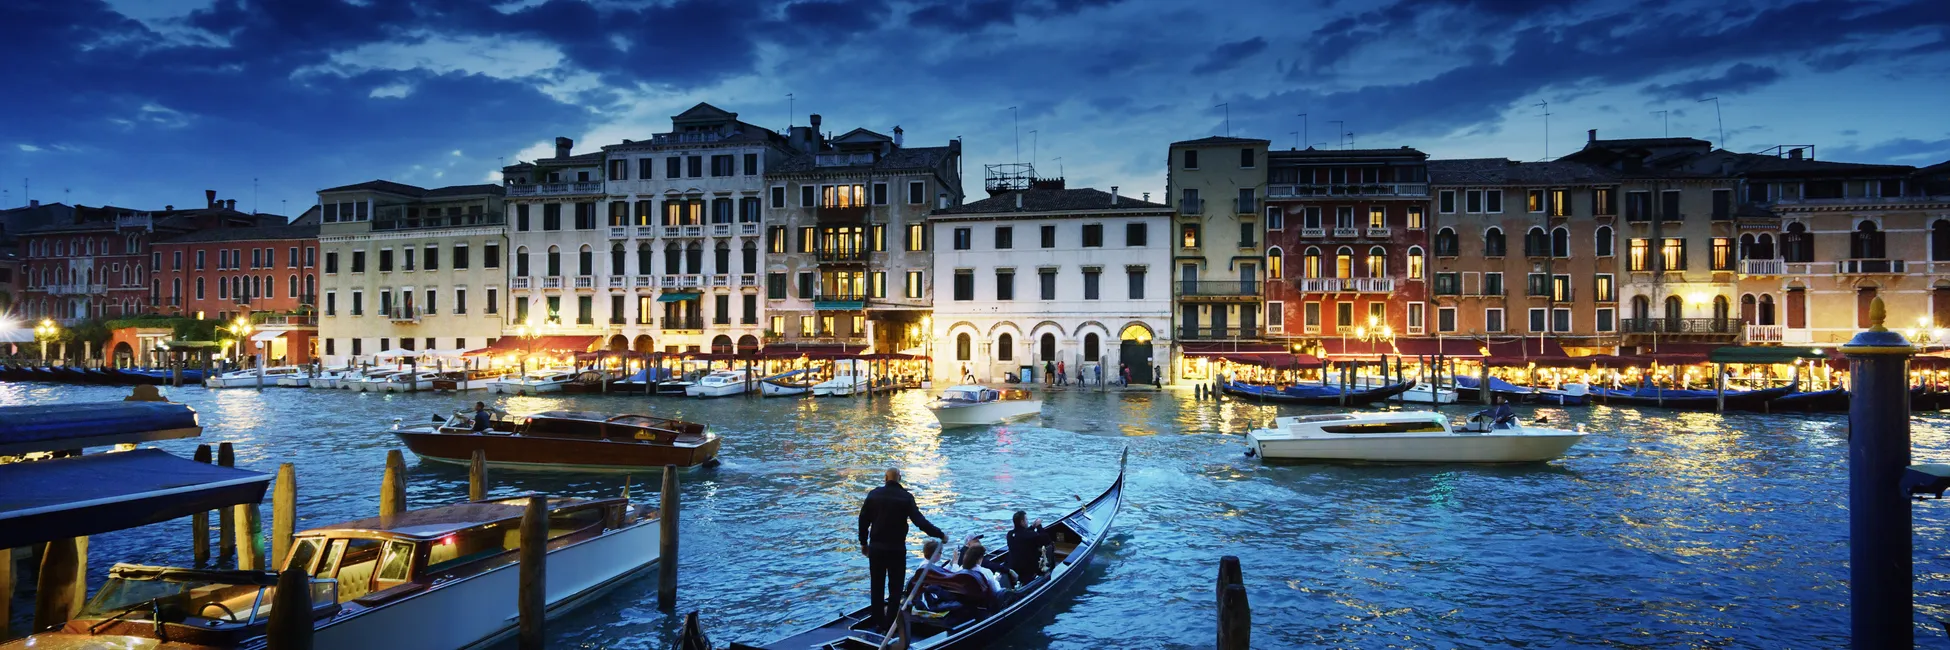 Le port de Venise éclairé de nuit 